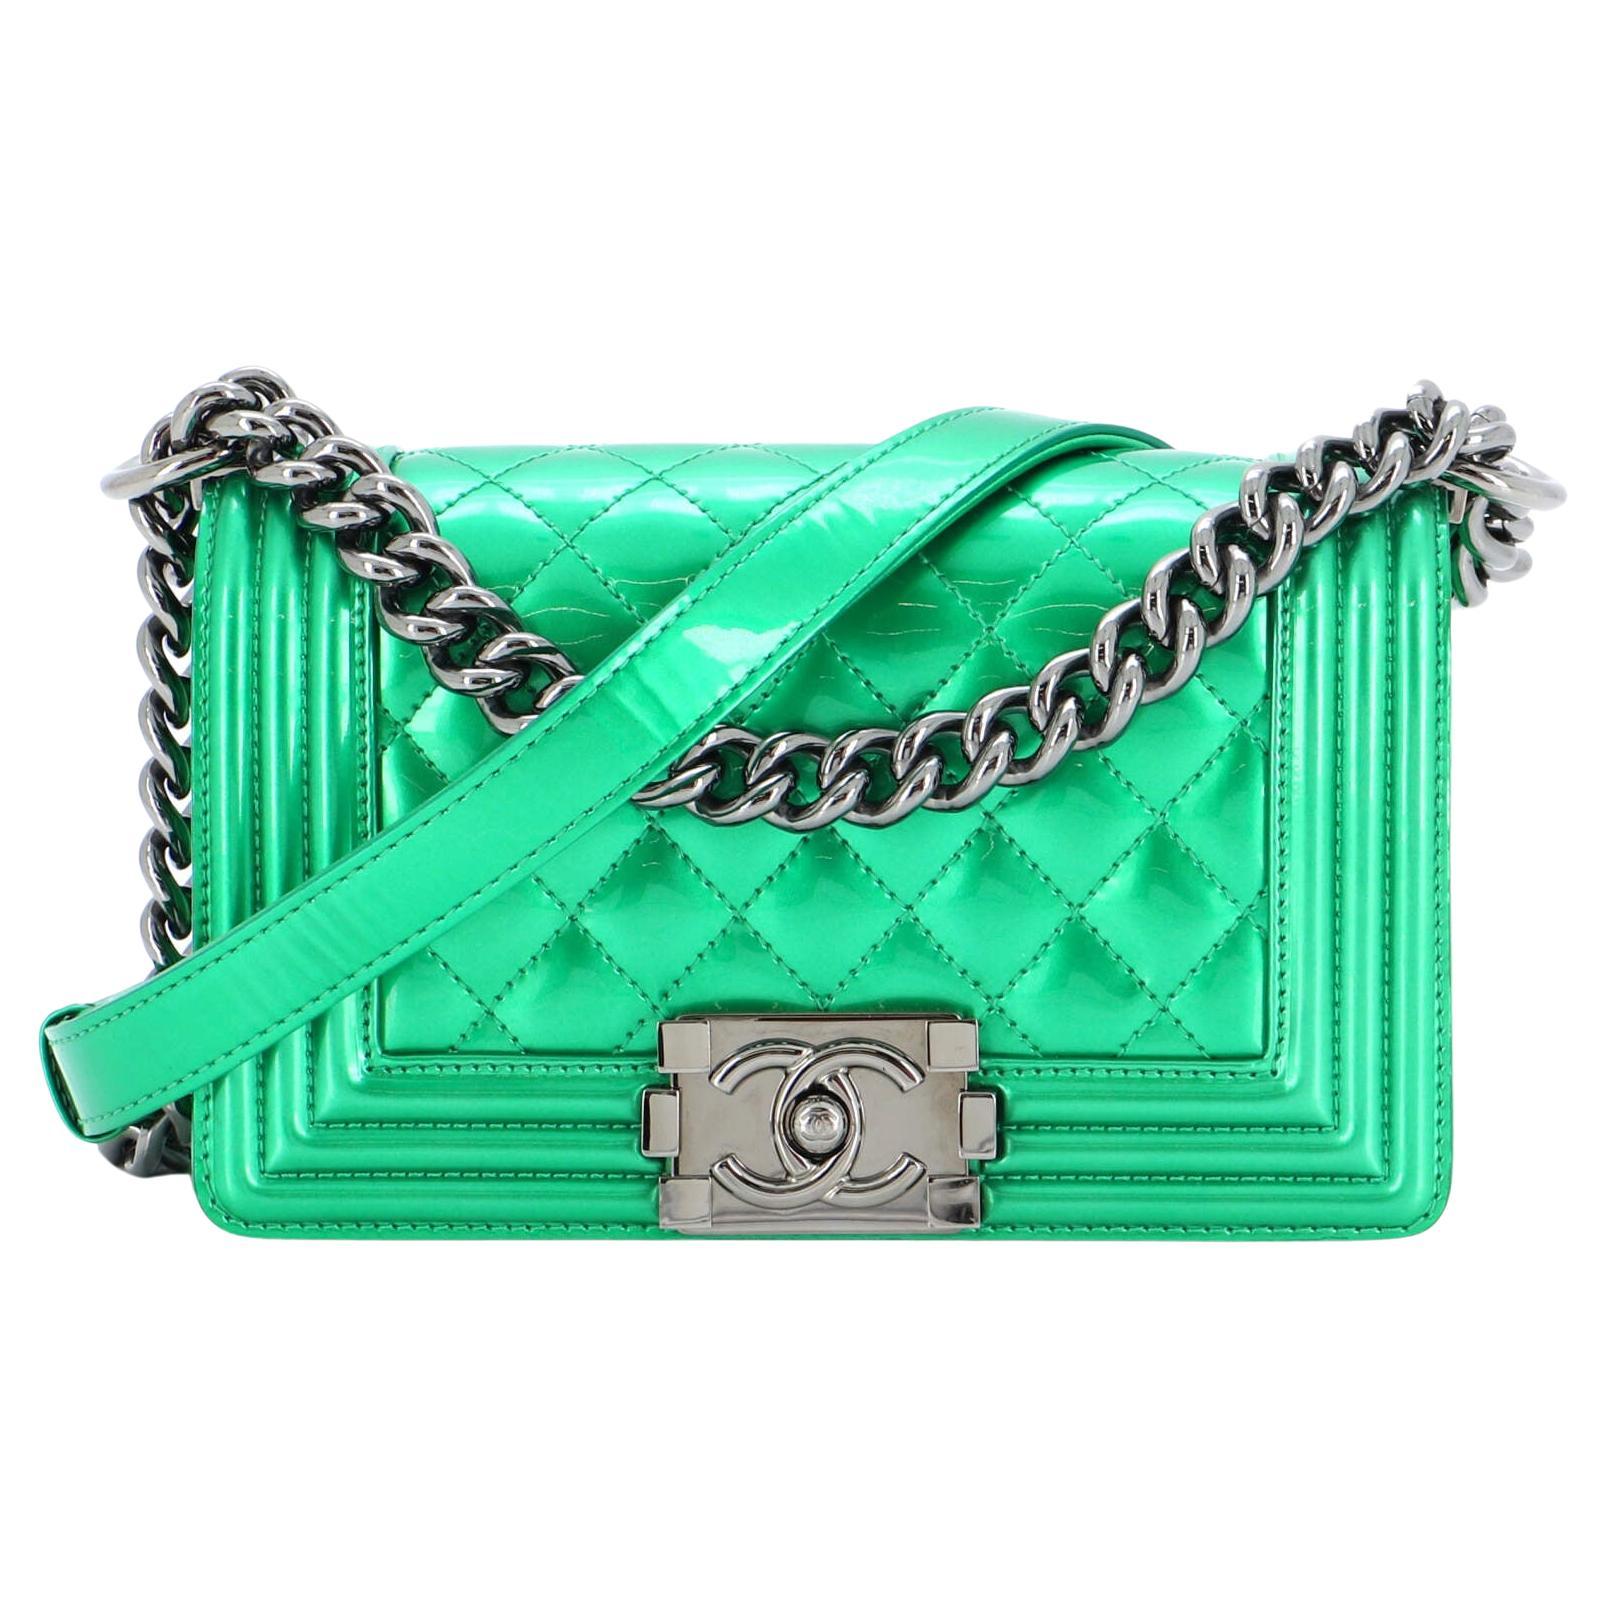 light green chanel bag